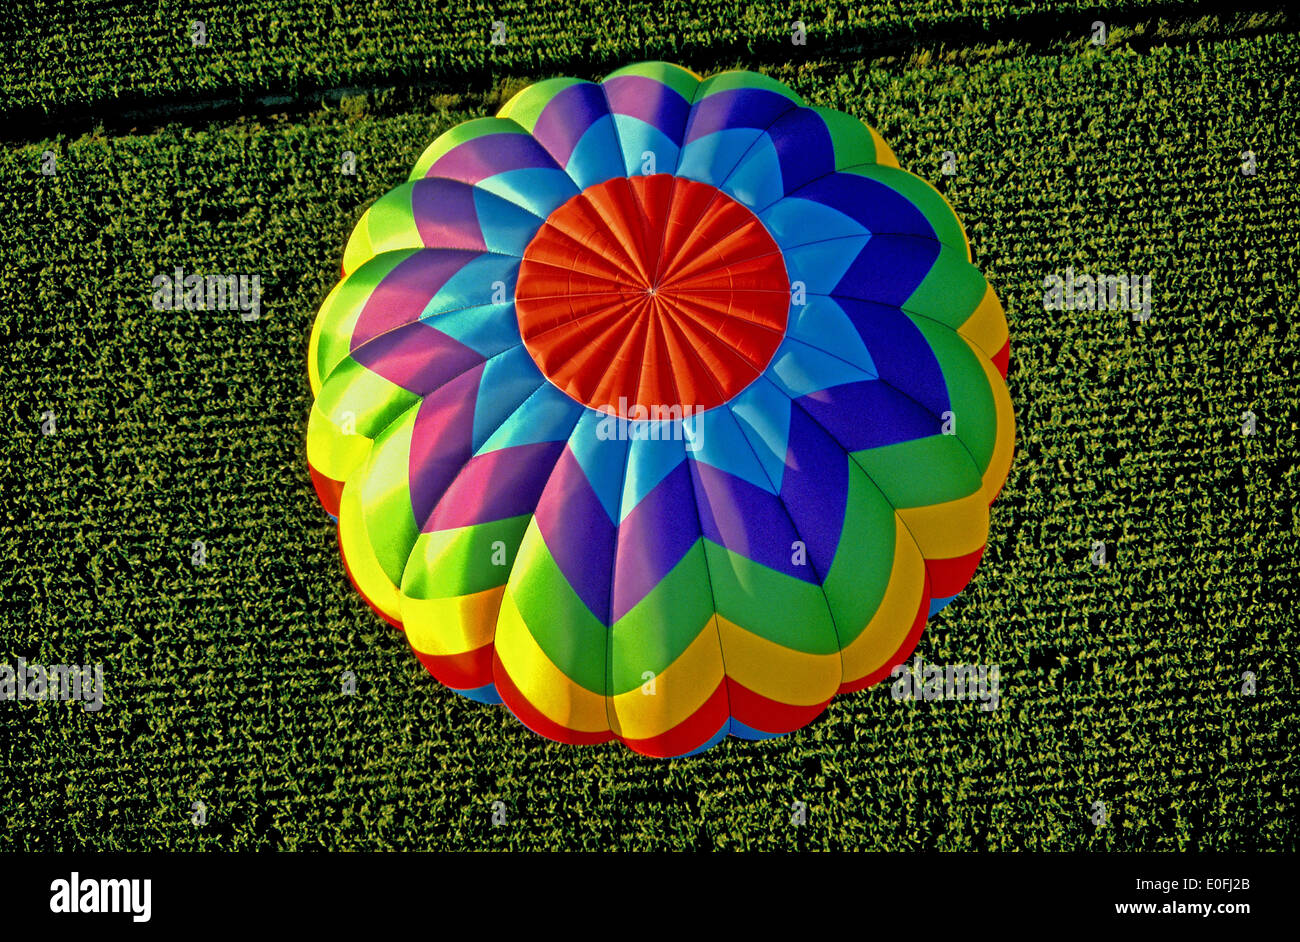 Hot Ballon Festival in Albuquerque New Mexico USA Stock Photo